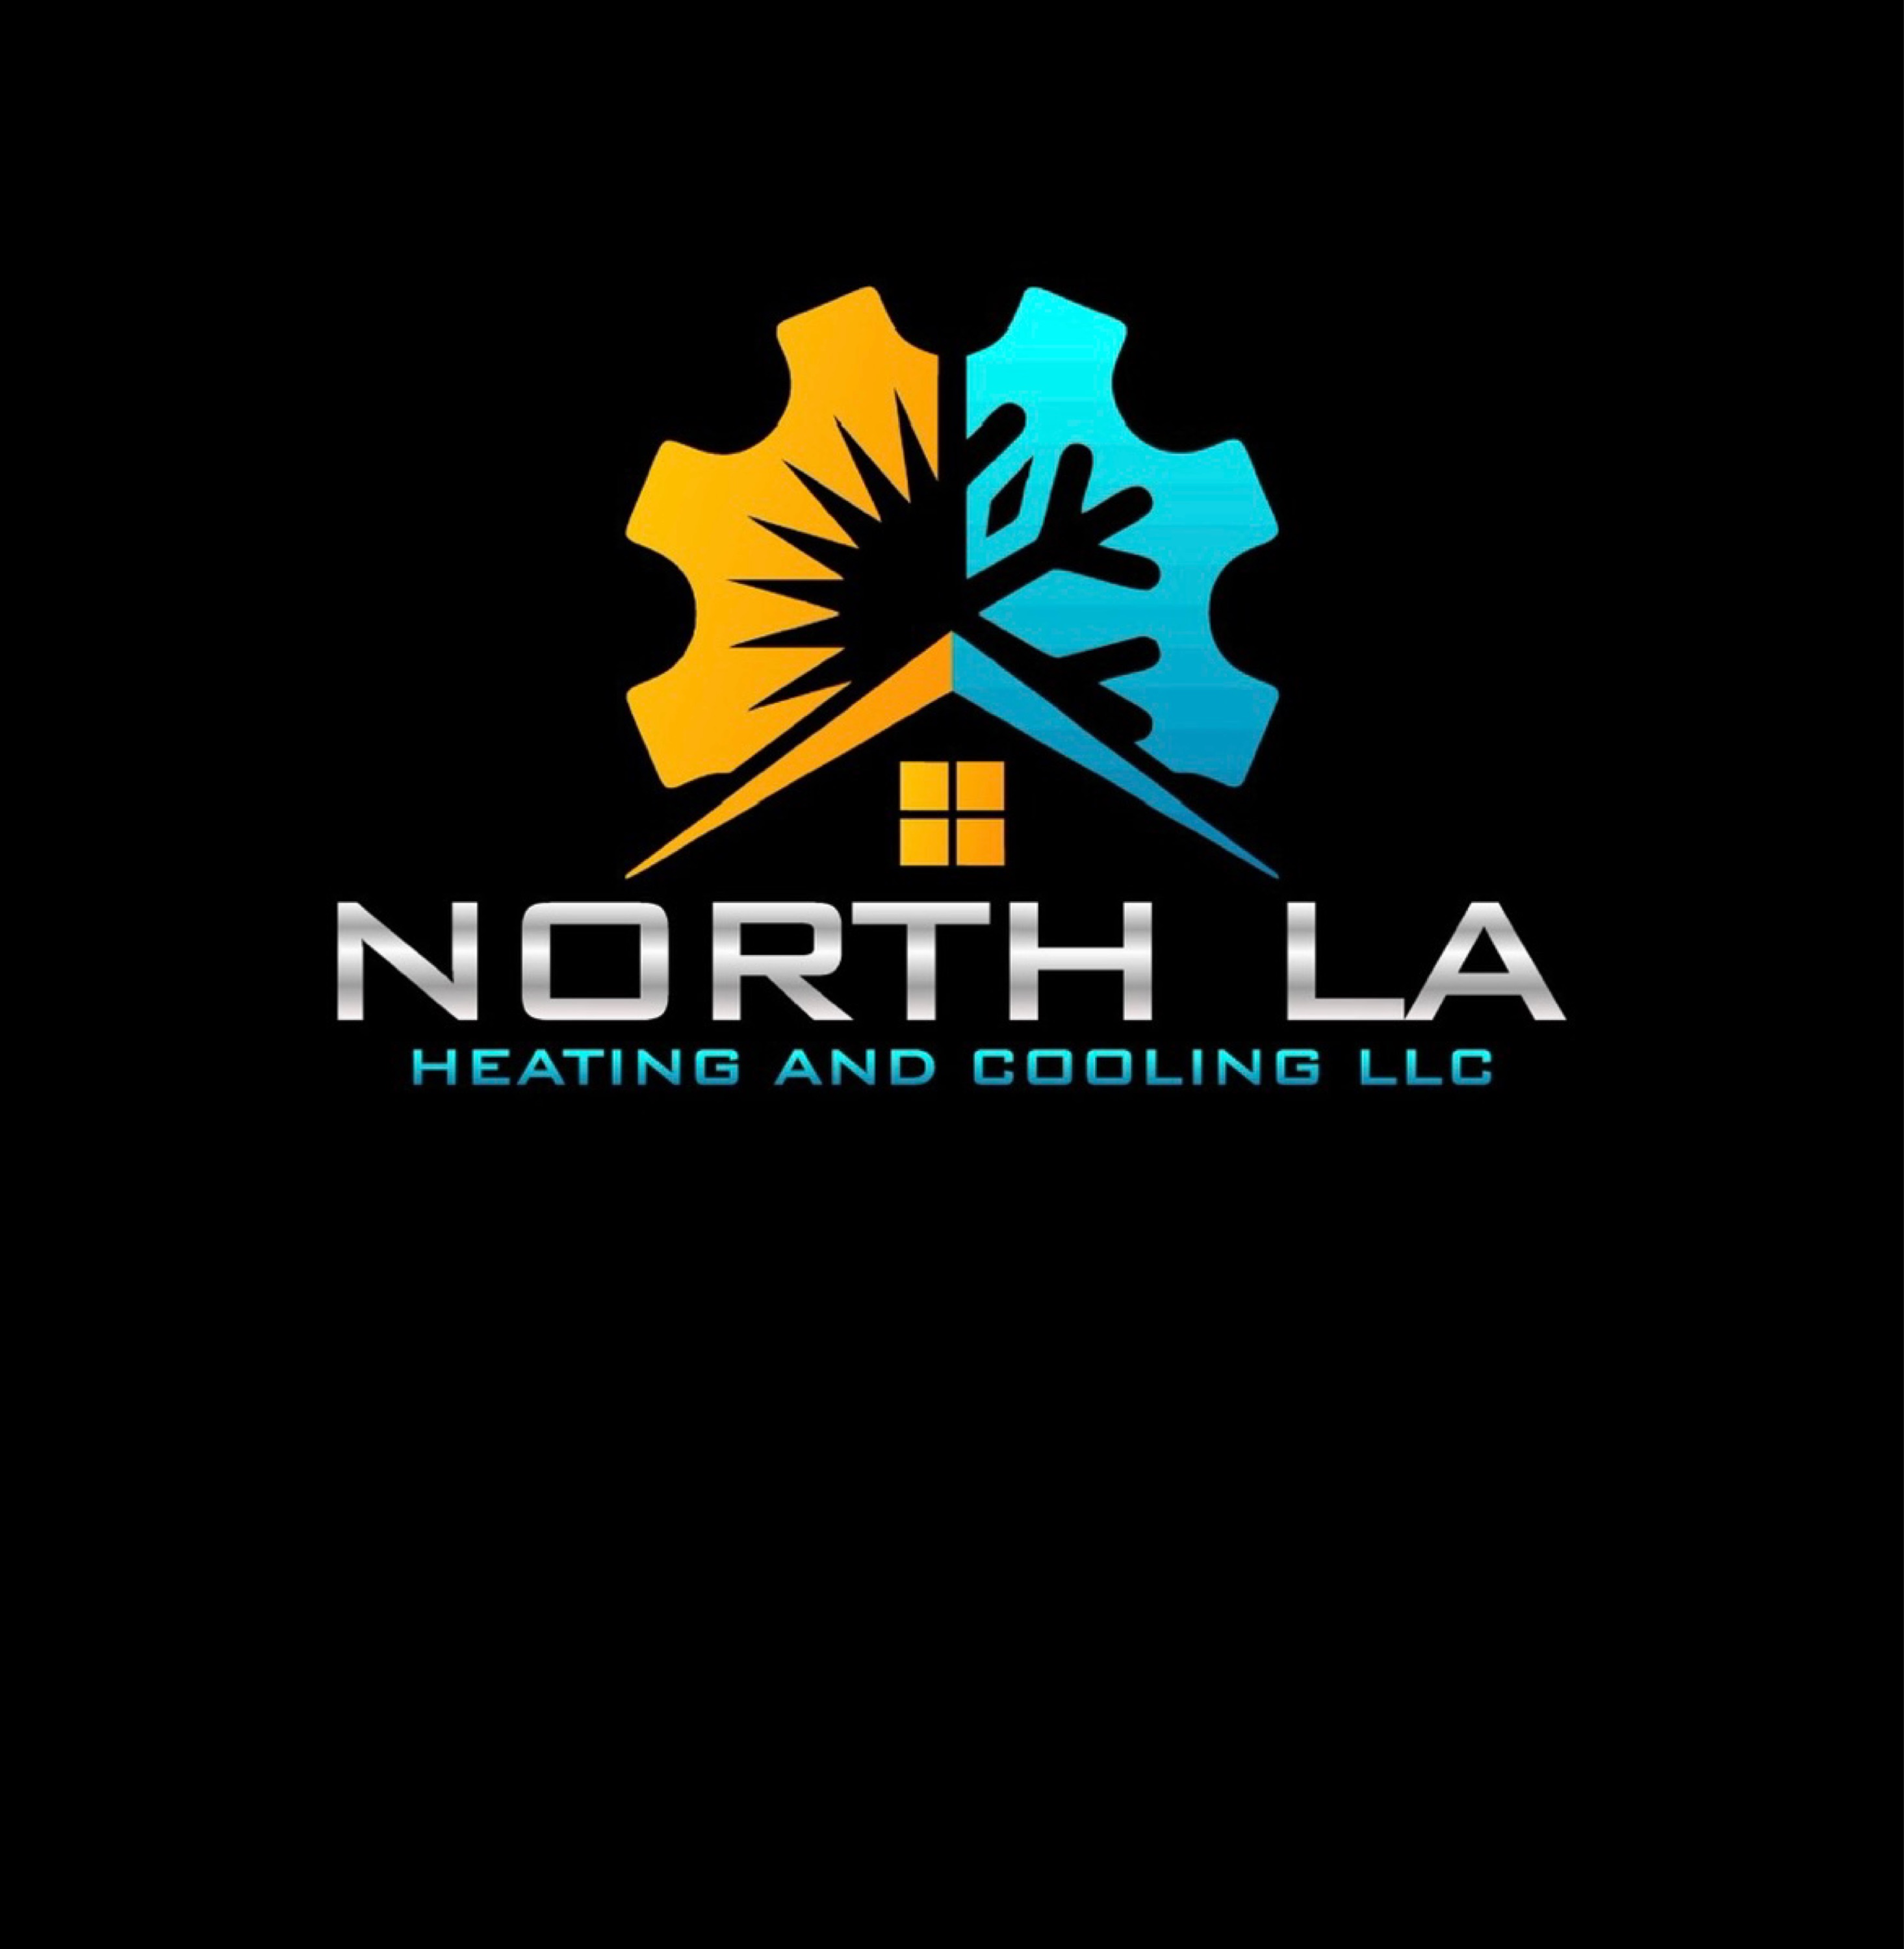 North LA Heating and Cooling LLC Logo